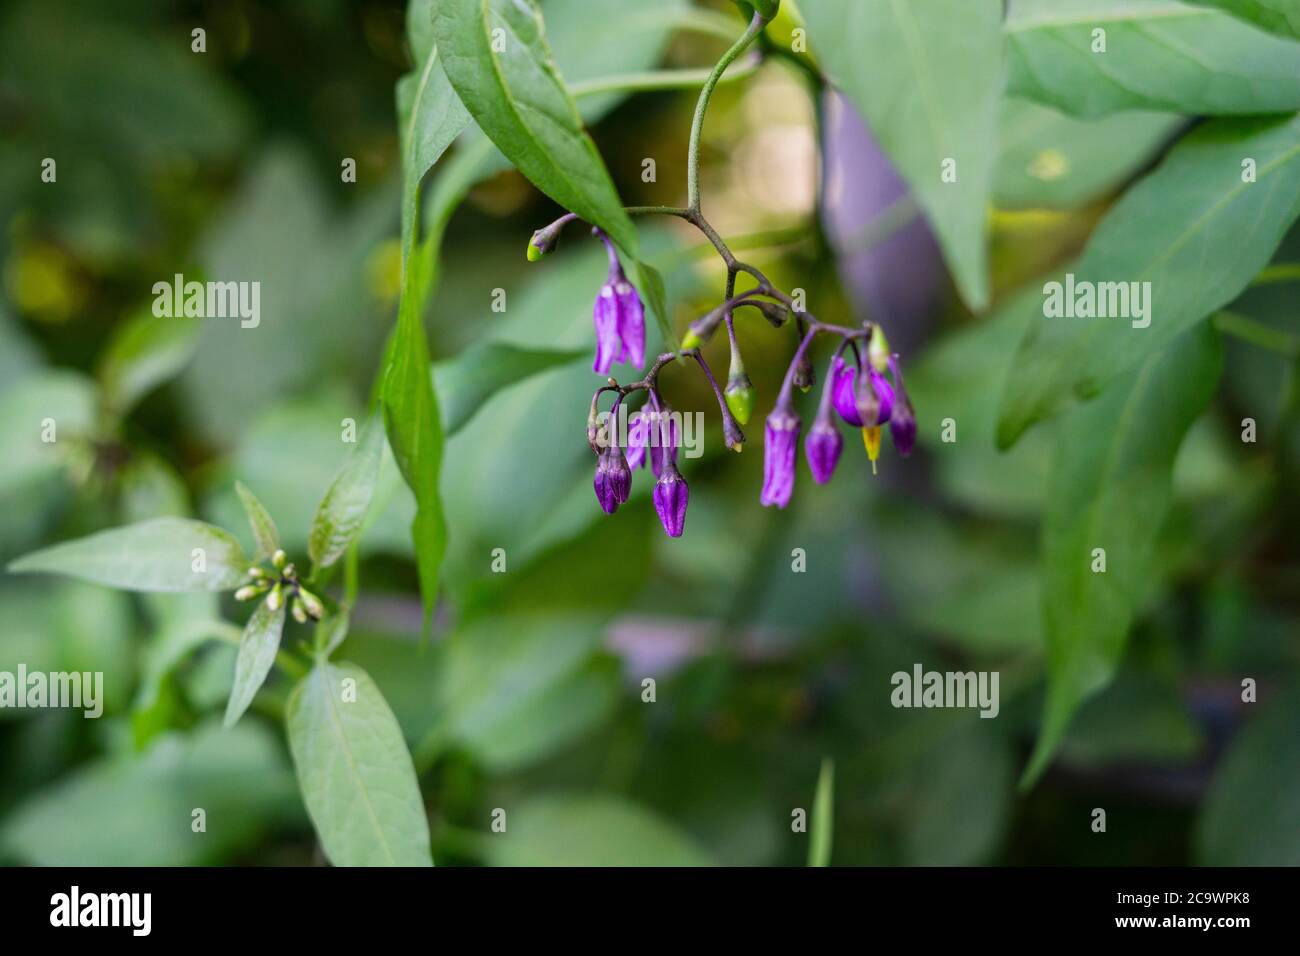 Woody nightshade purple flowers Solanum dulcamara. Natural green background Stock Photo